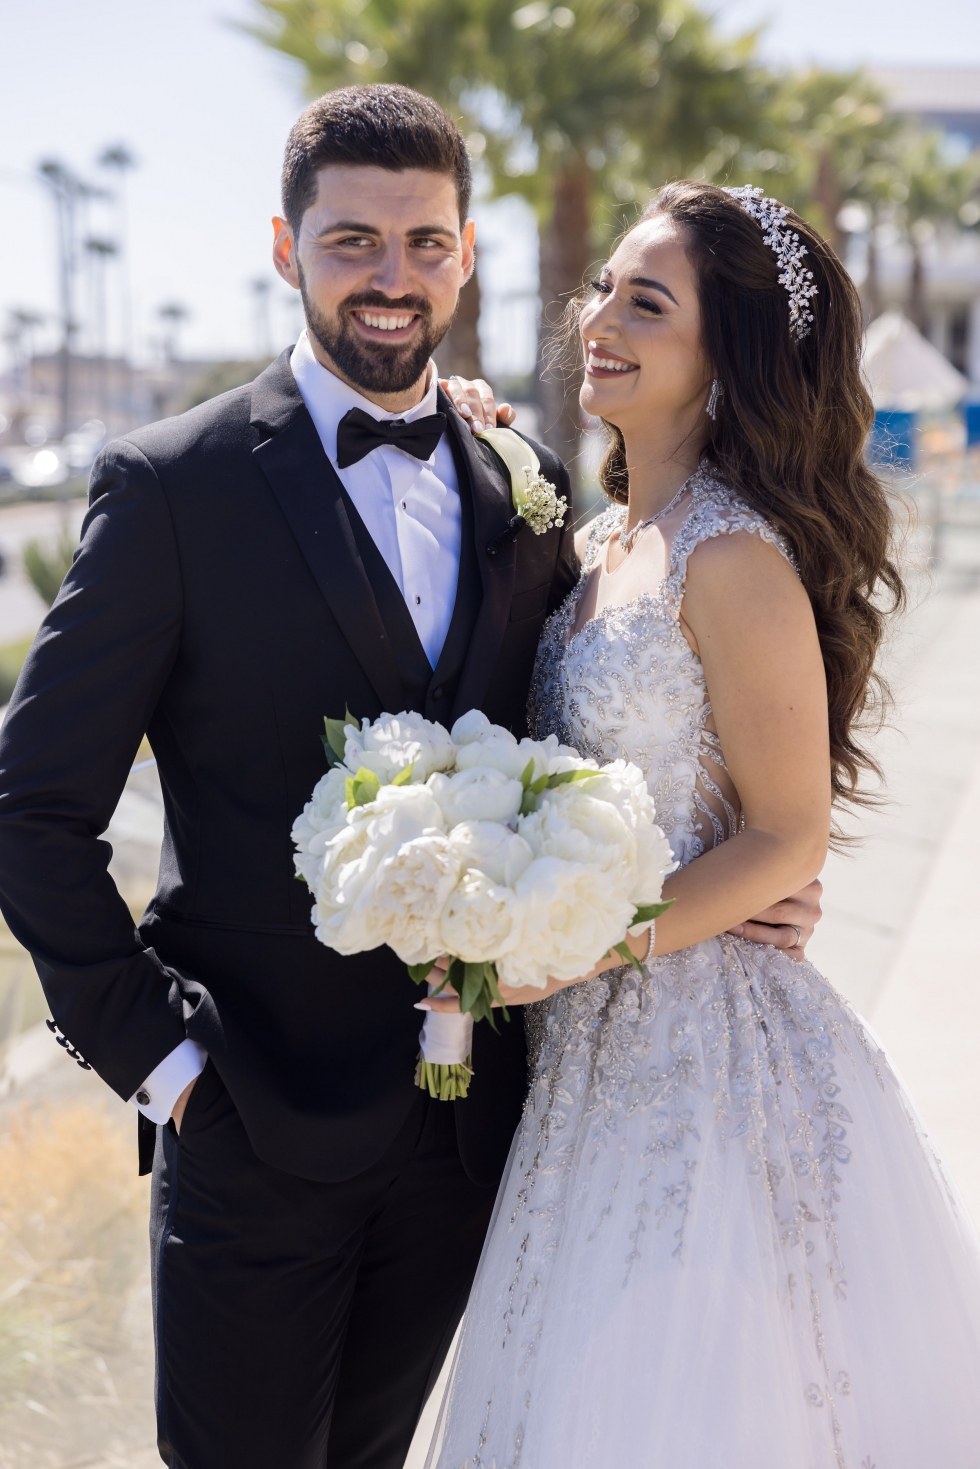 حفل زفاف عربي أنيق في شاطئ هنتنغتون في كاليفورنيا